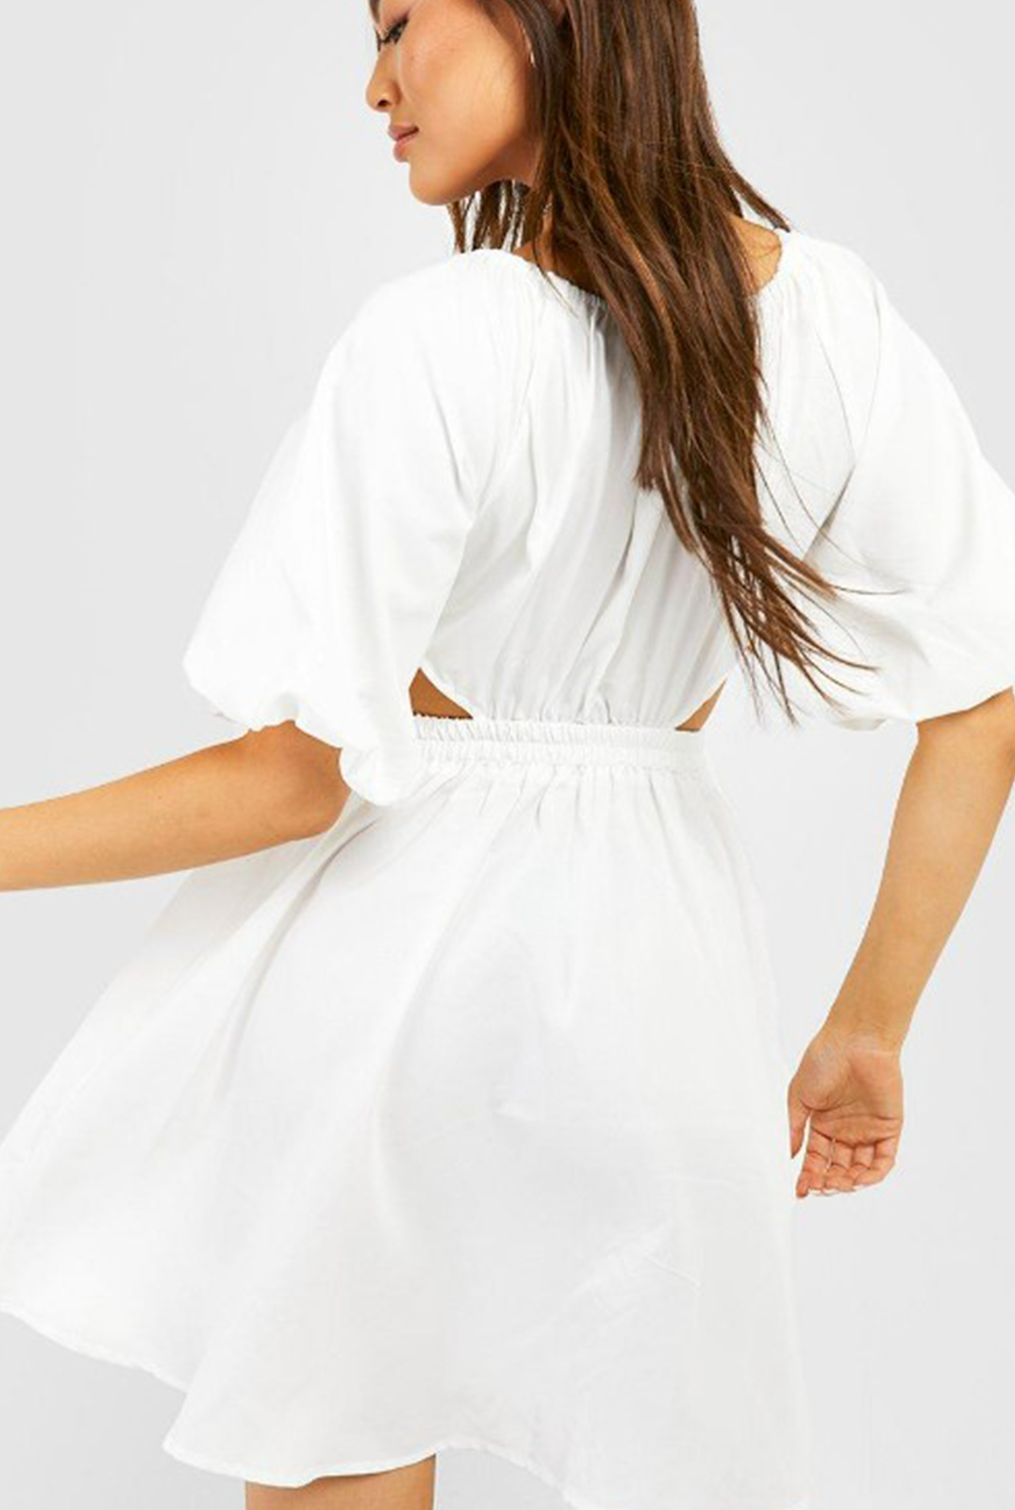 Nova White Dress